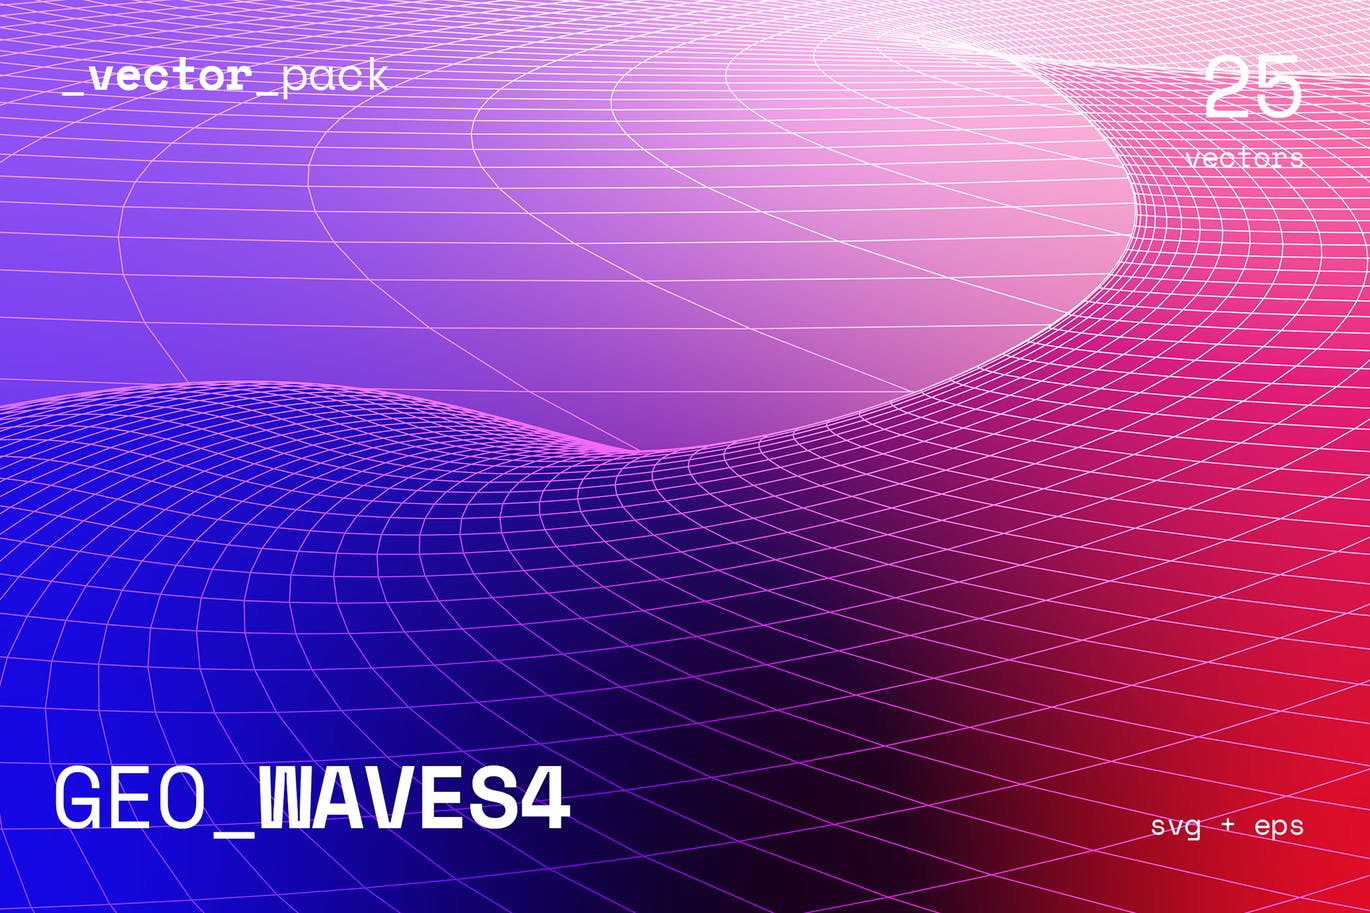 高科技未来感GEO波纹高清背景素材包 GEO_WAVES4 Vector Pack插图